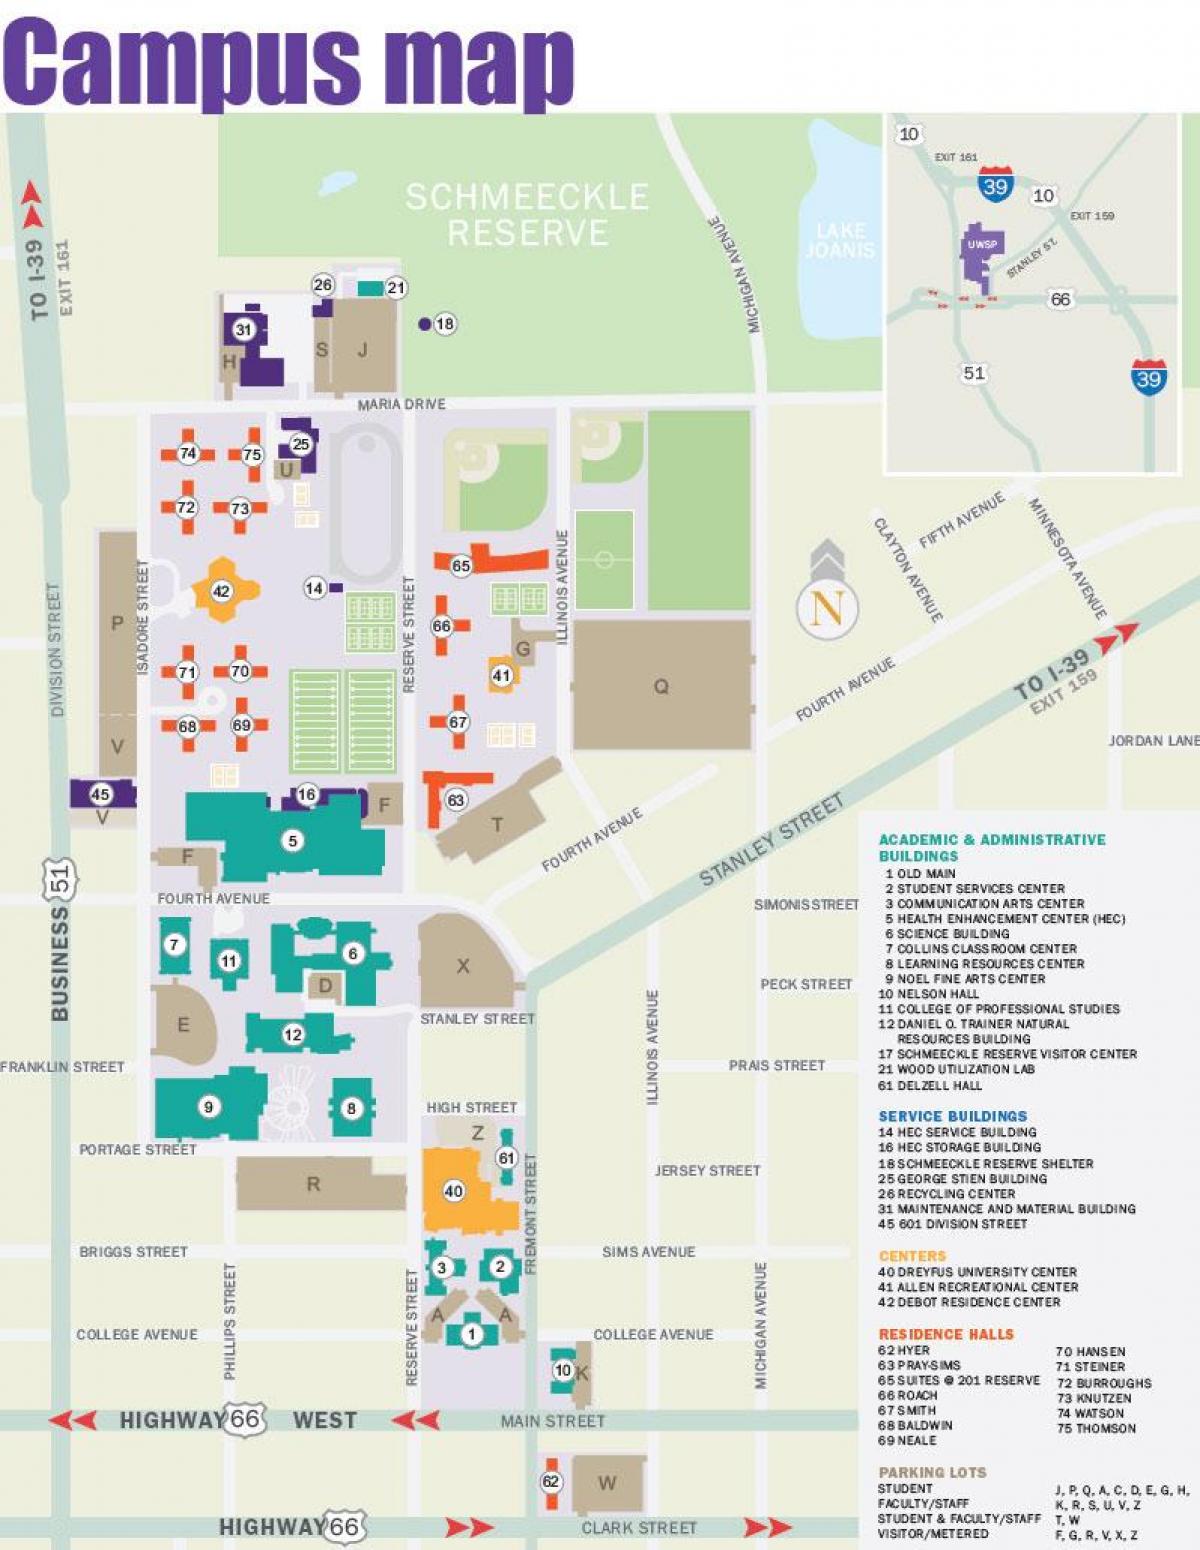 map of NYU campus